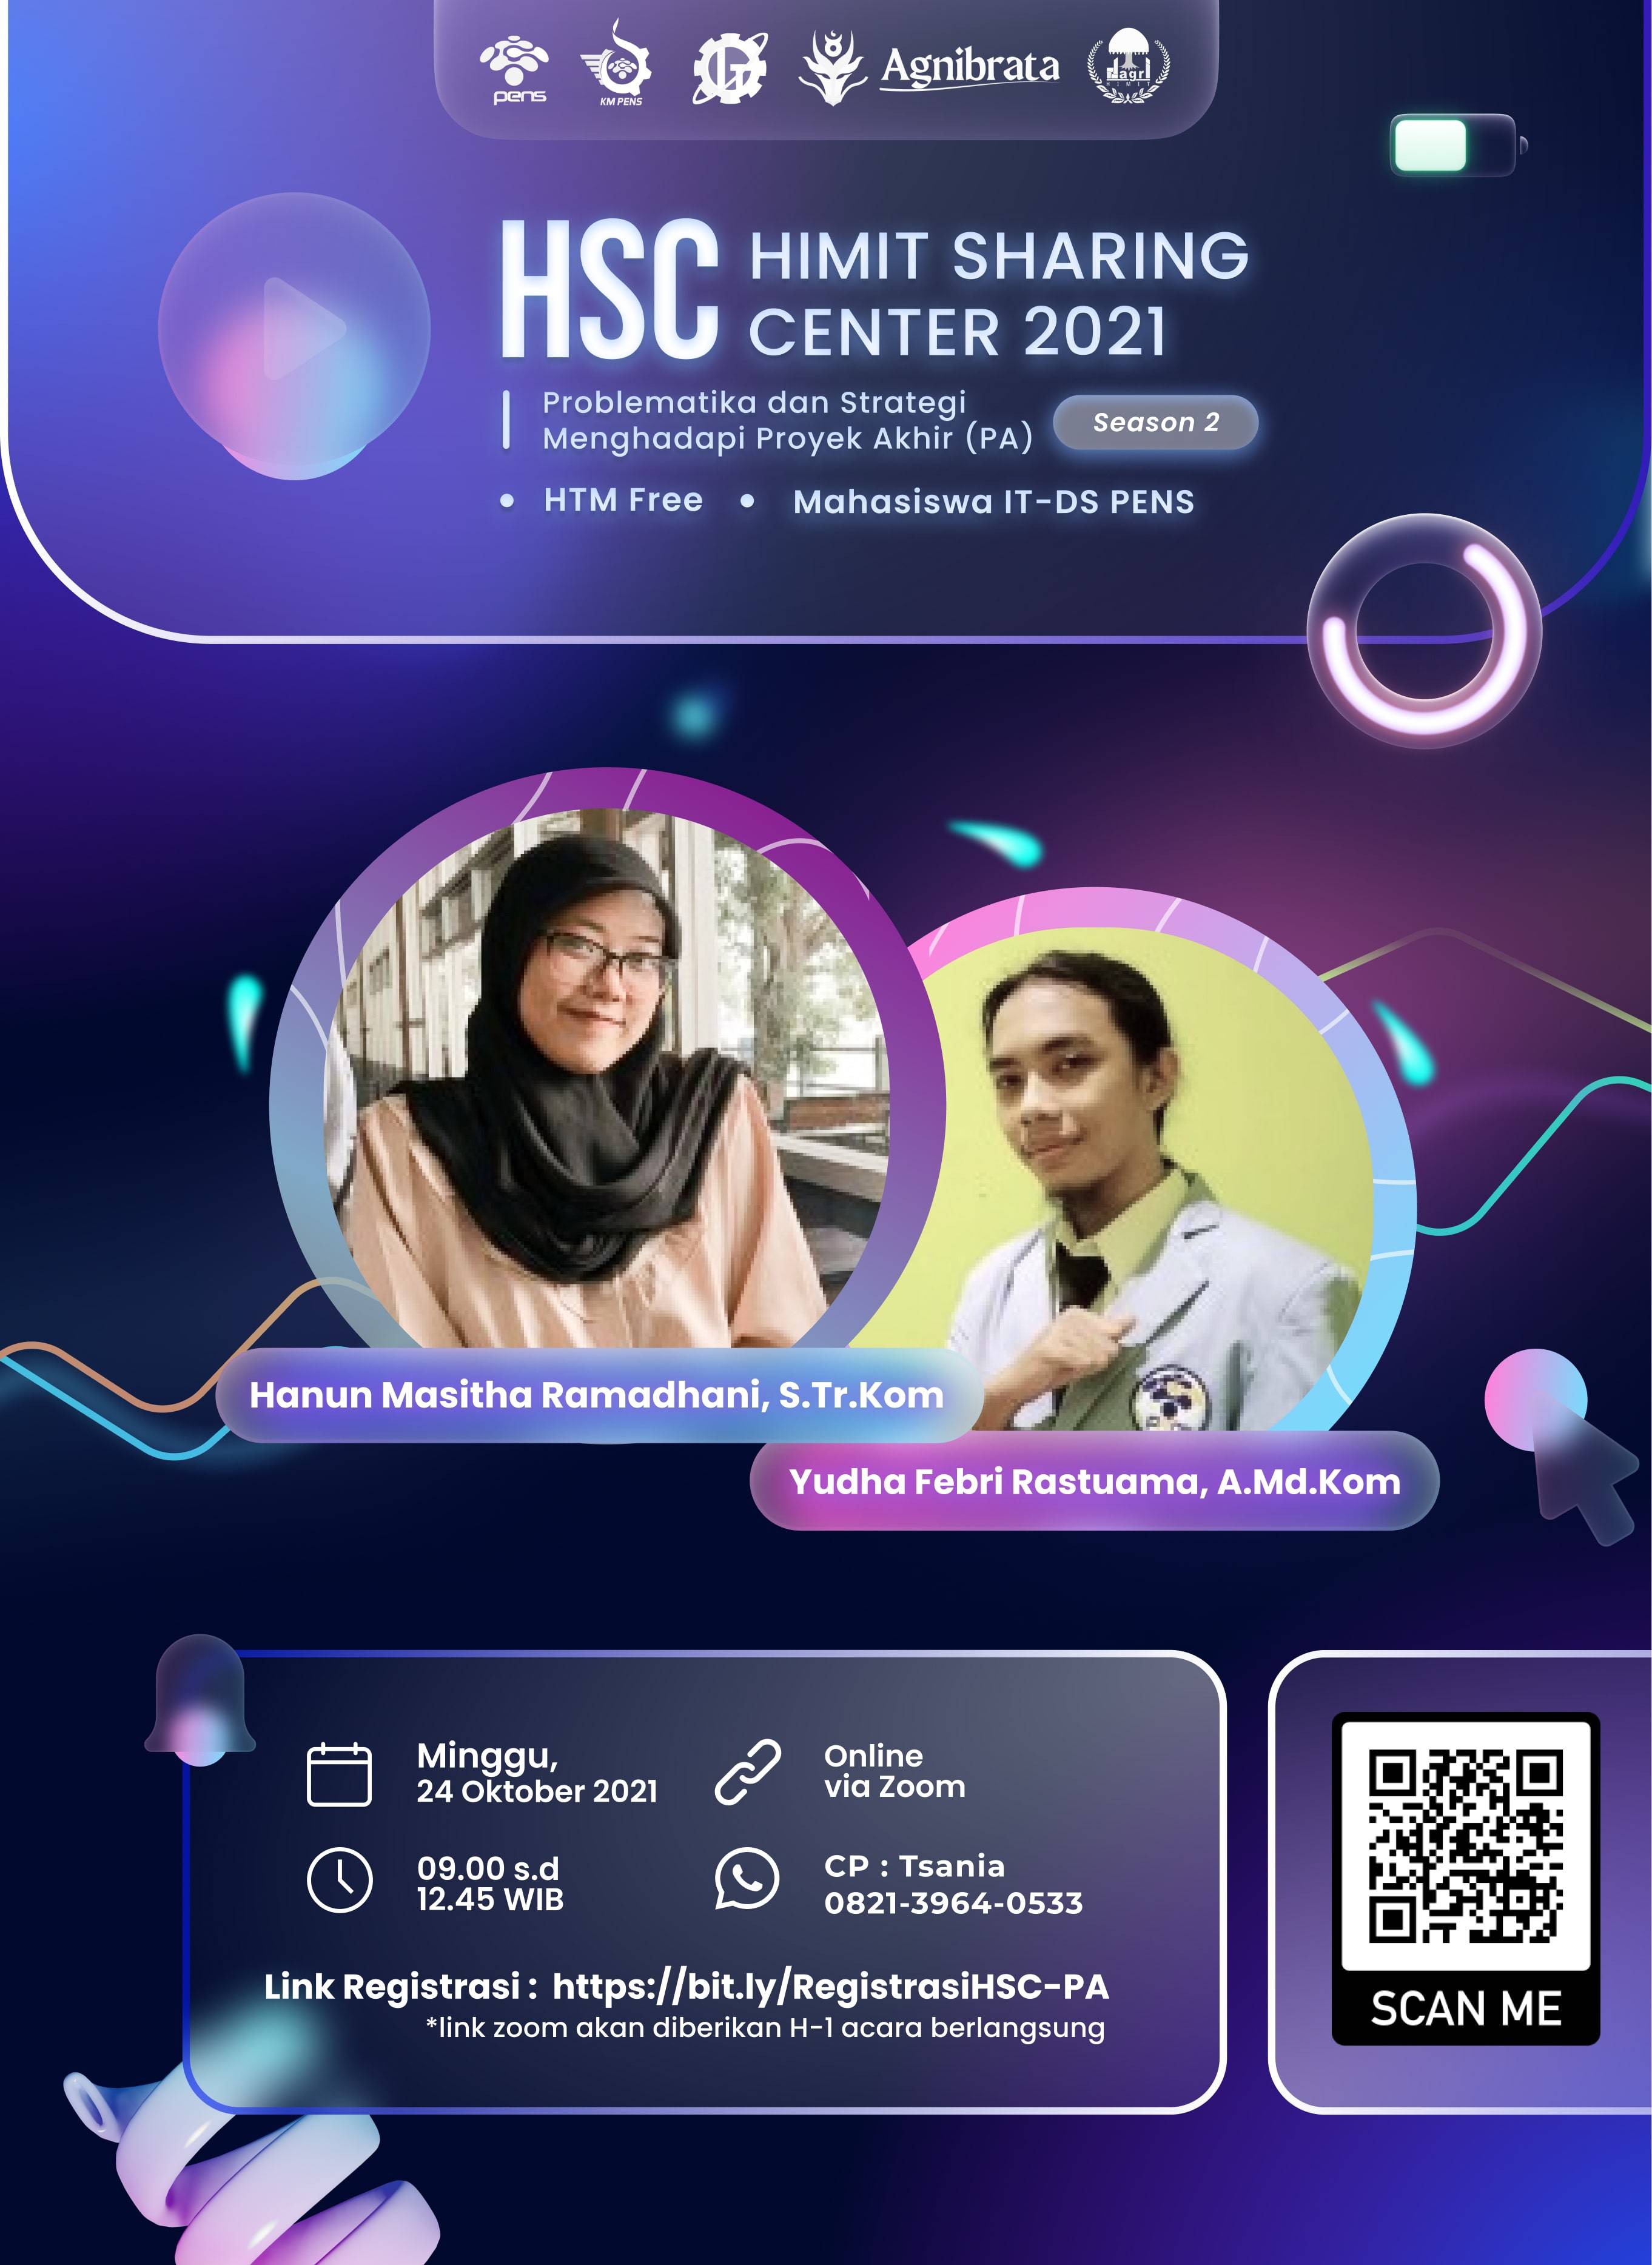 HIMIT Sharing Center "Proyek Akhir" 2021